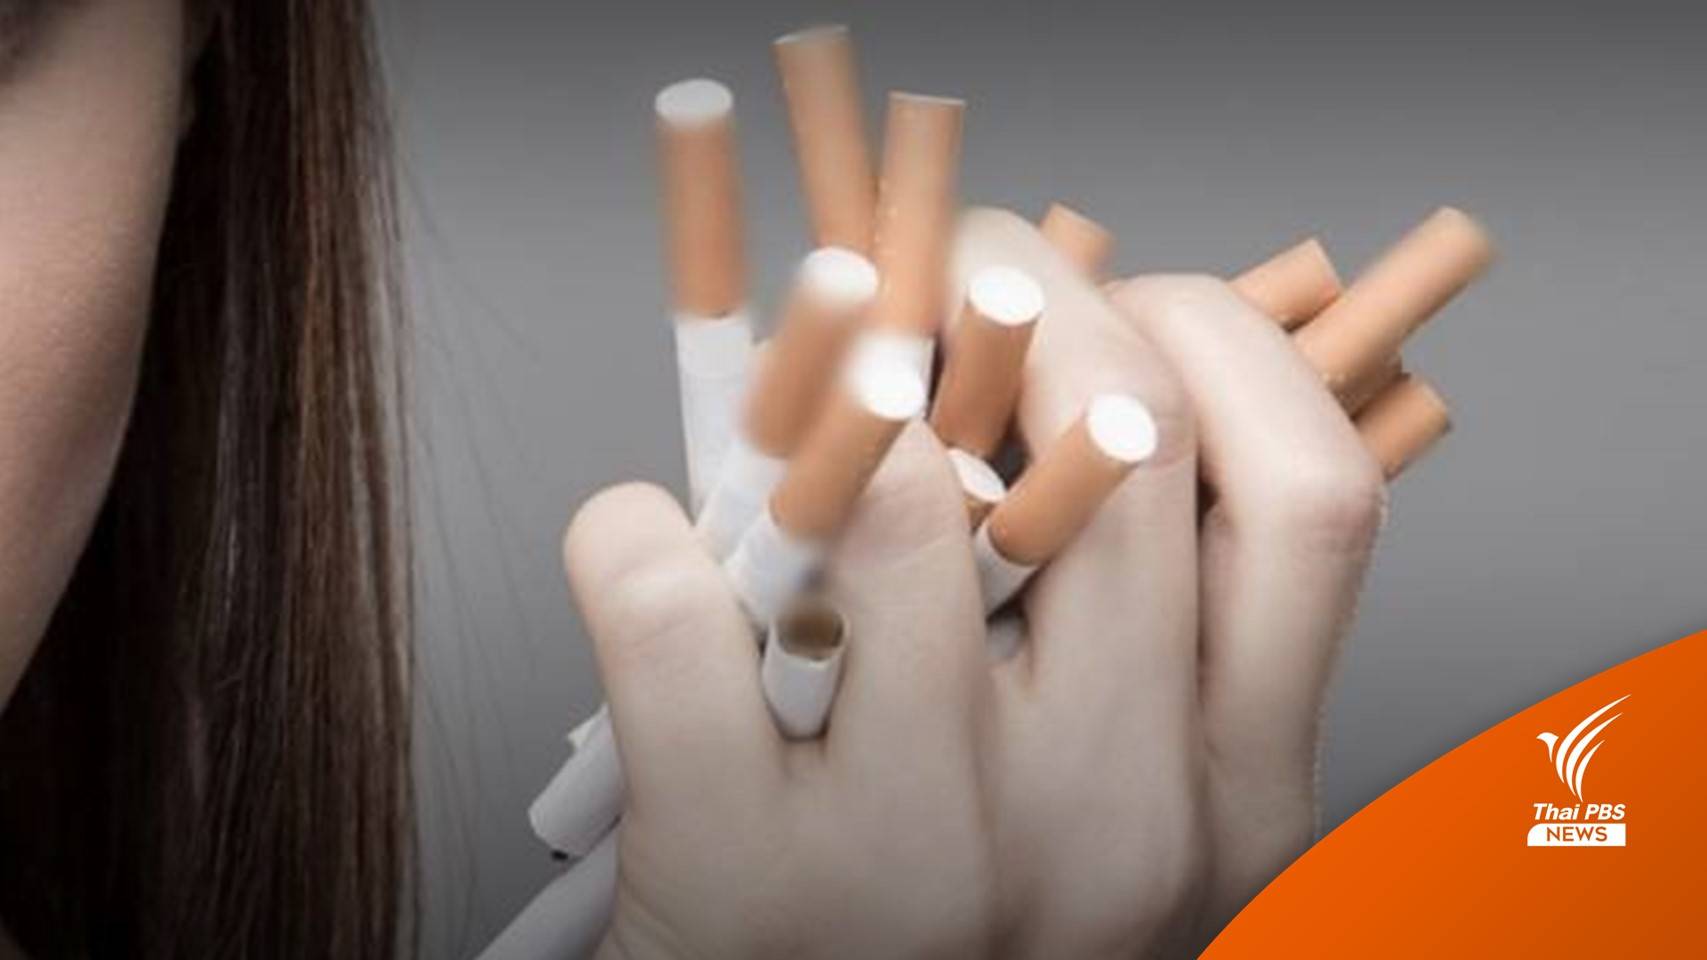 สูบบุหรี่ส่งผลเกิดภาวะปอดรั่ว อันตรายถึงชีวิต 